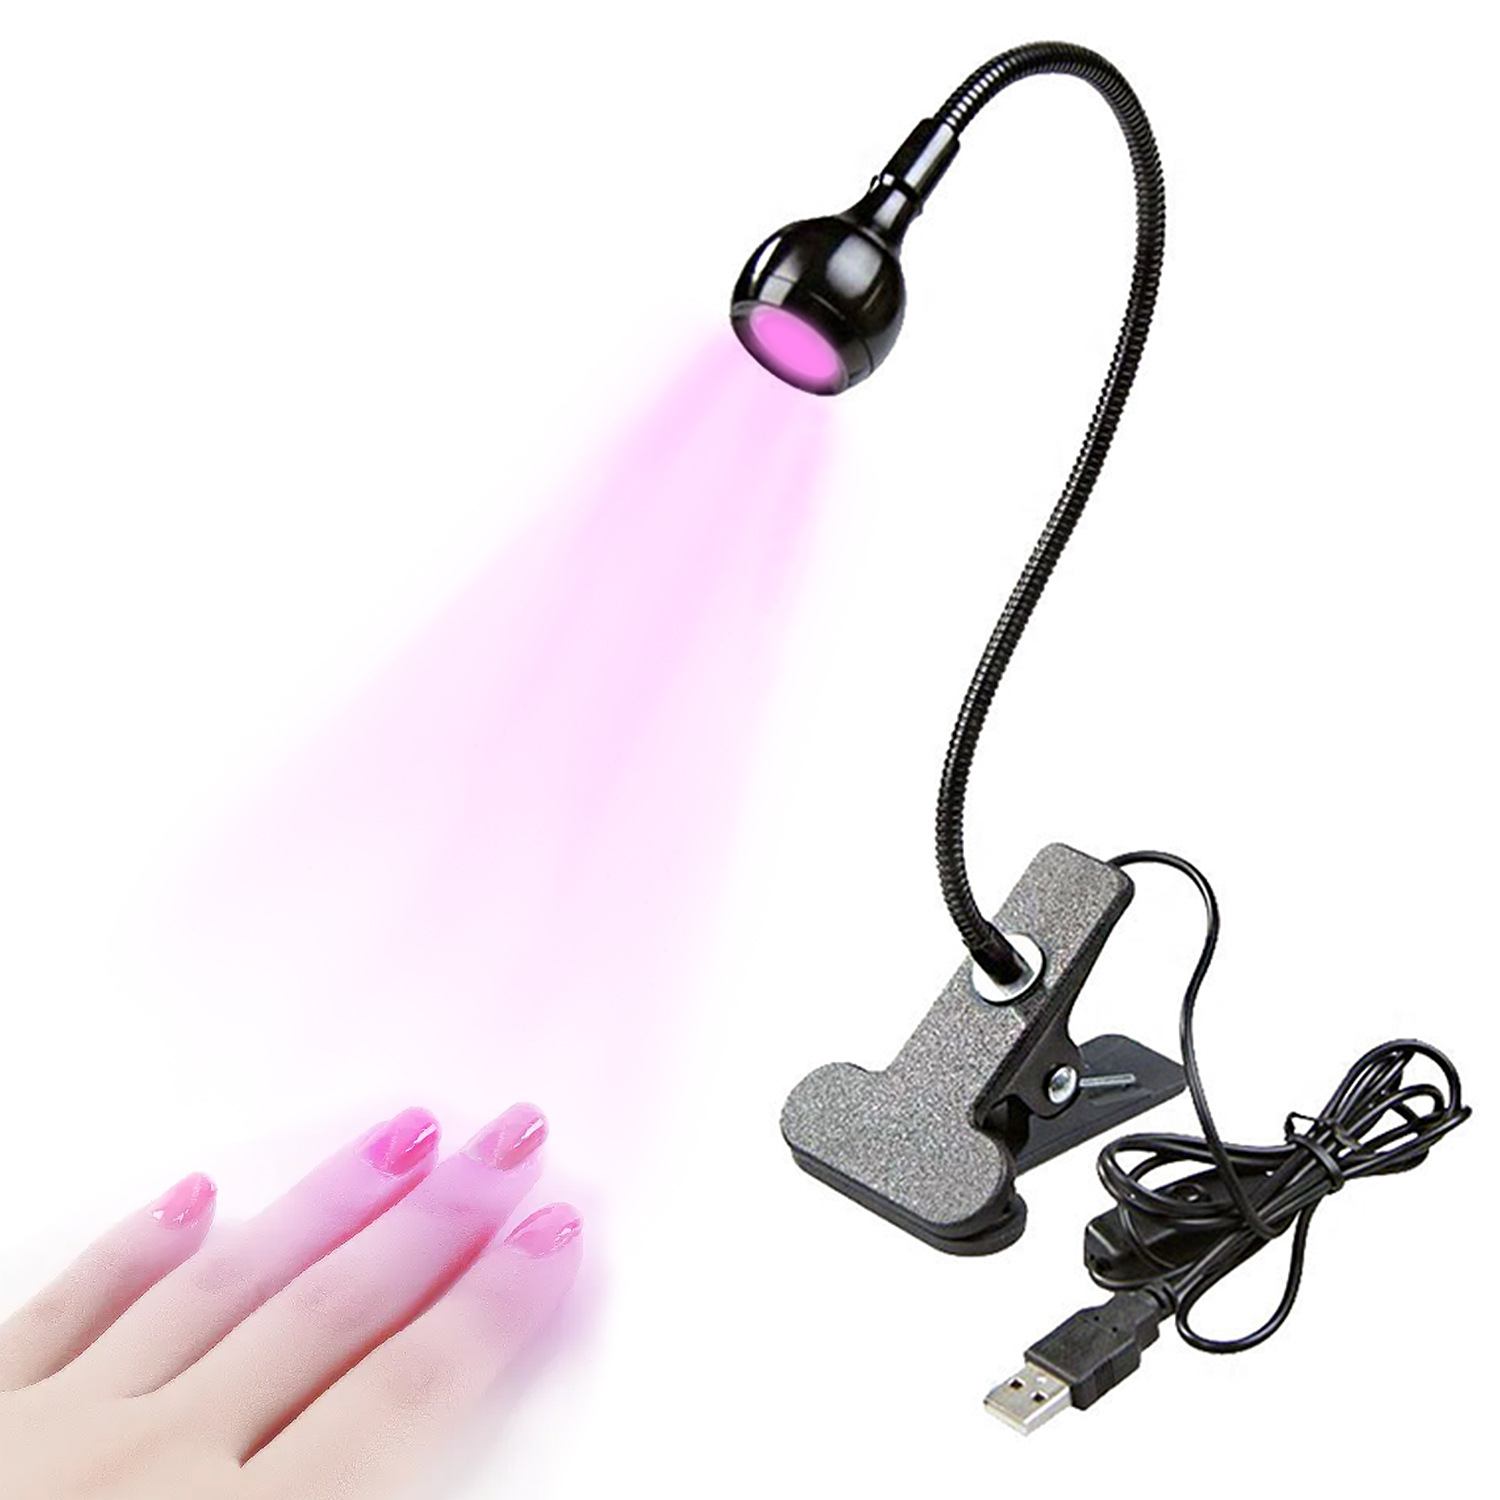 USB clamp lamp Bedside lamp Mobile phone repair lamp Nail polish curing lamp UV glue curing violet lamp